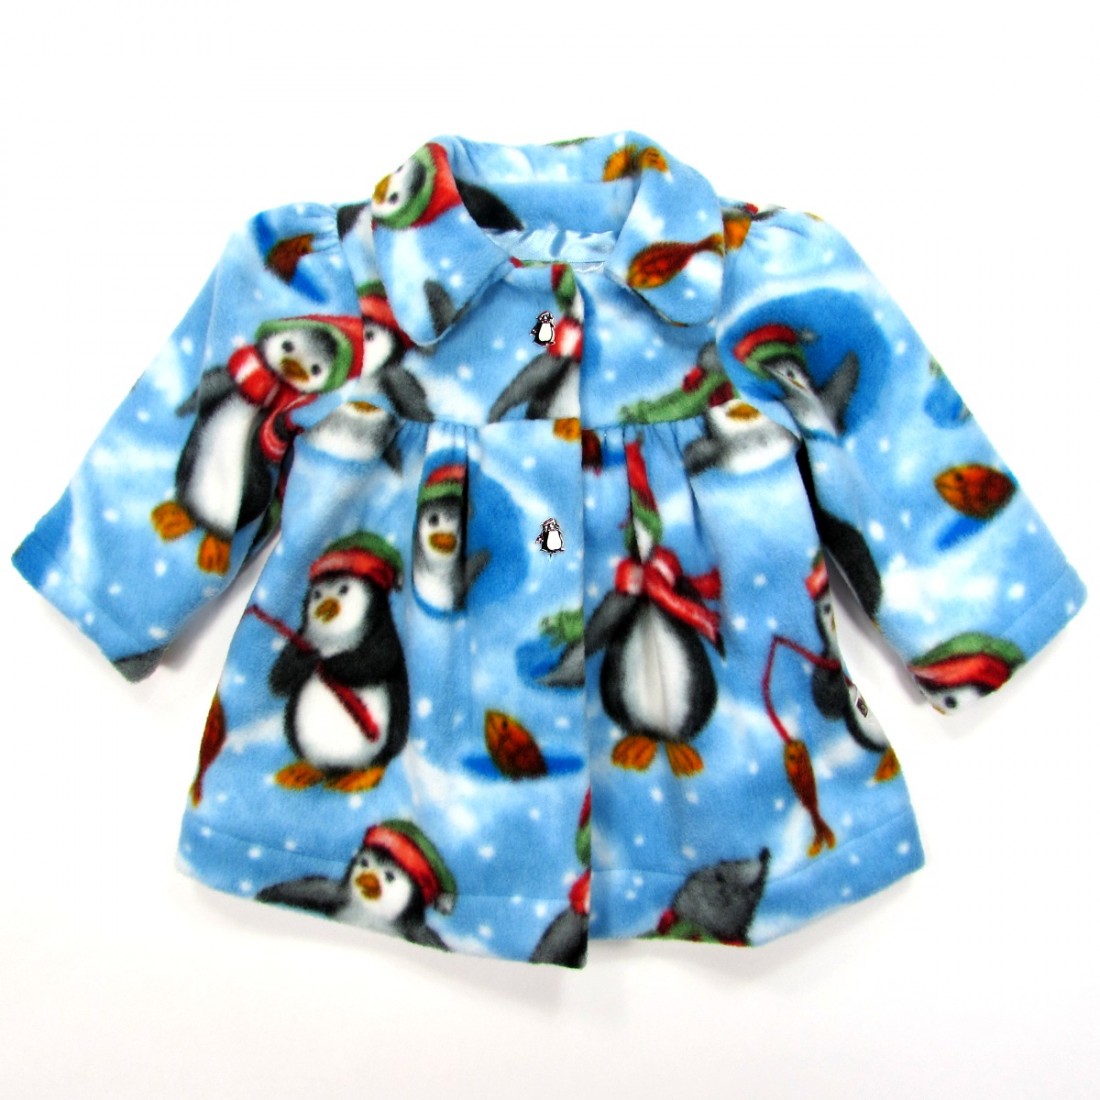 Veste bébé fille en polaire bleu ciel avec pingouins pêchant sur la banquise